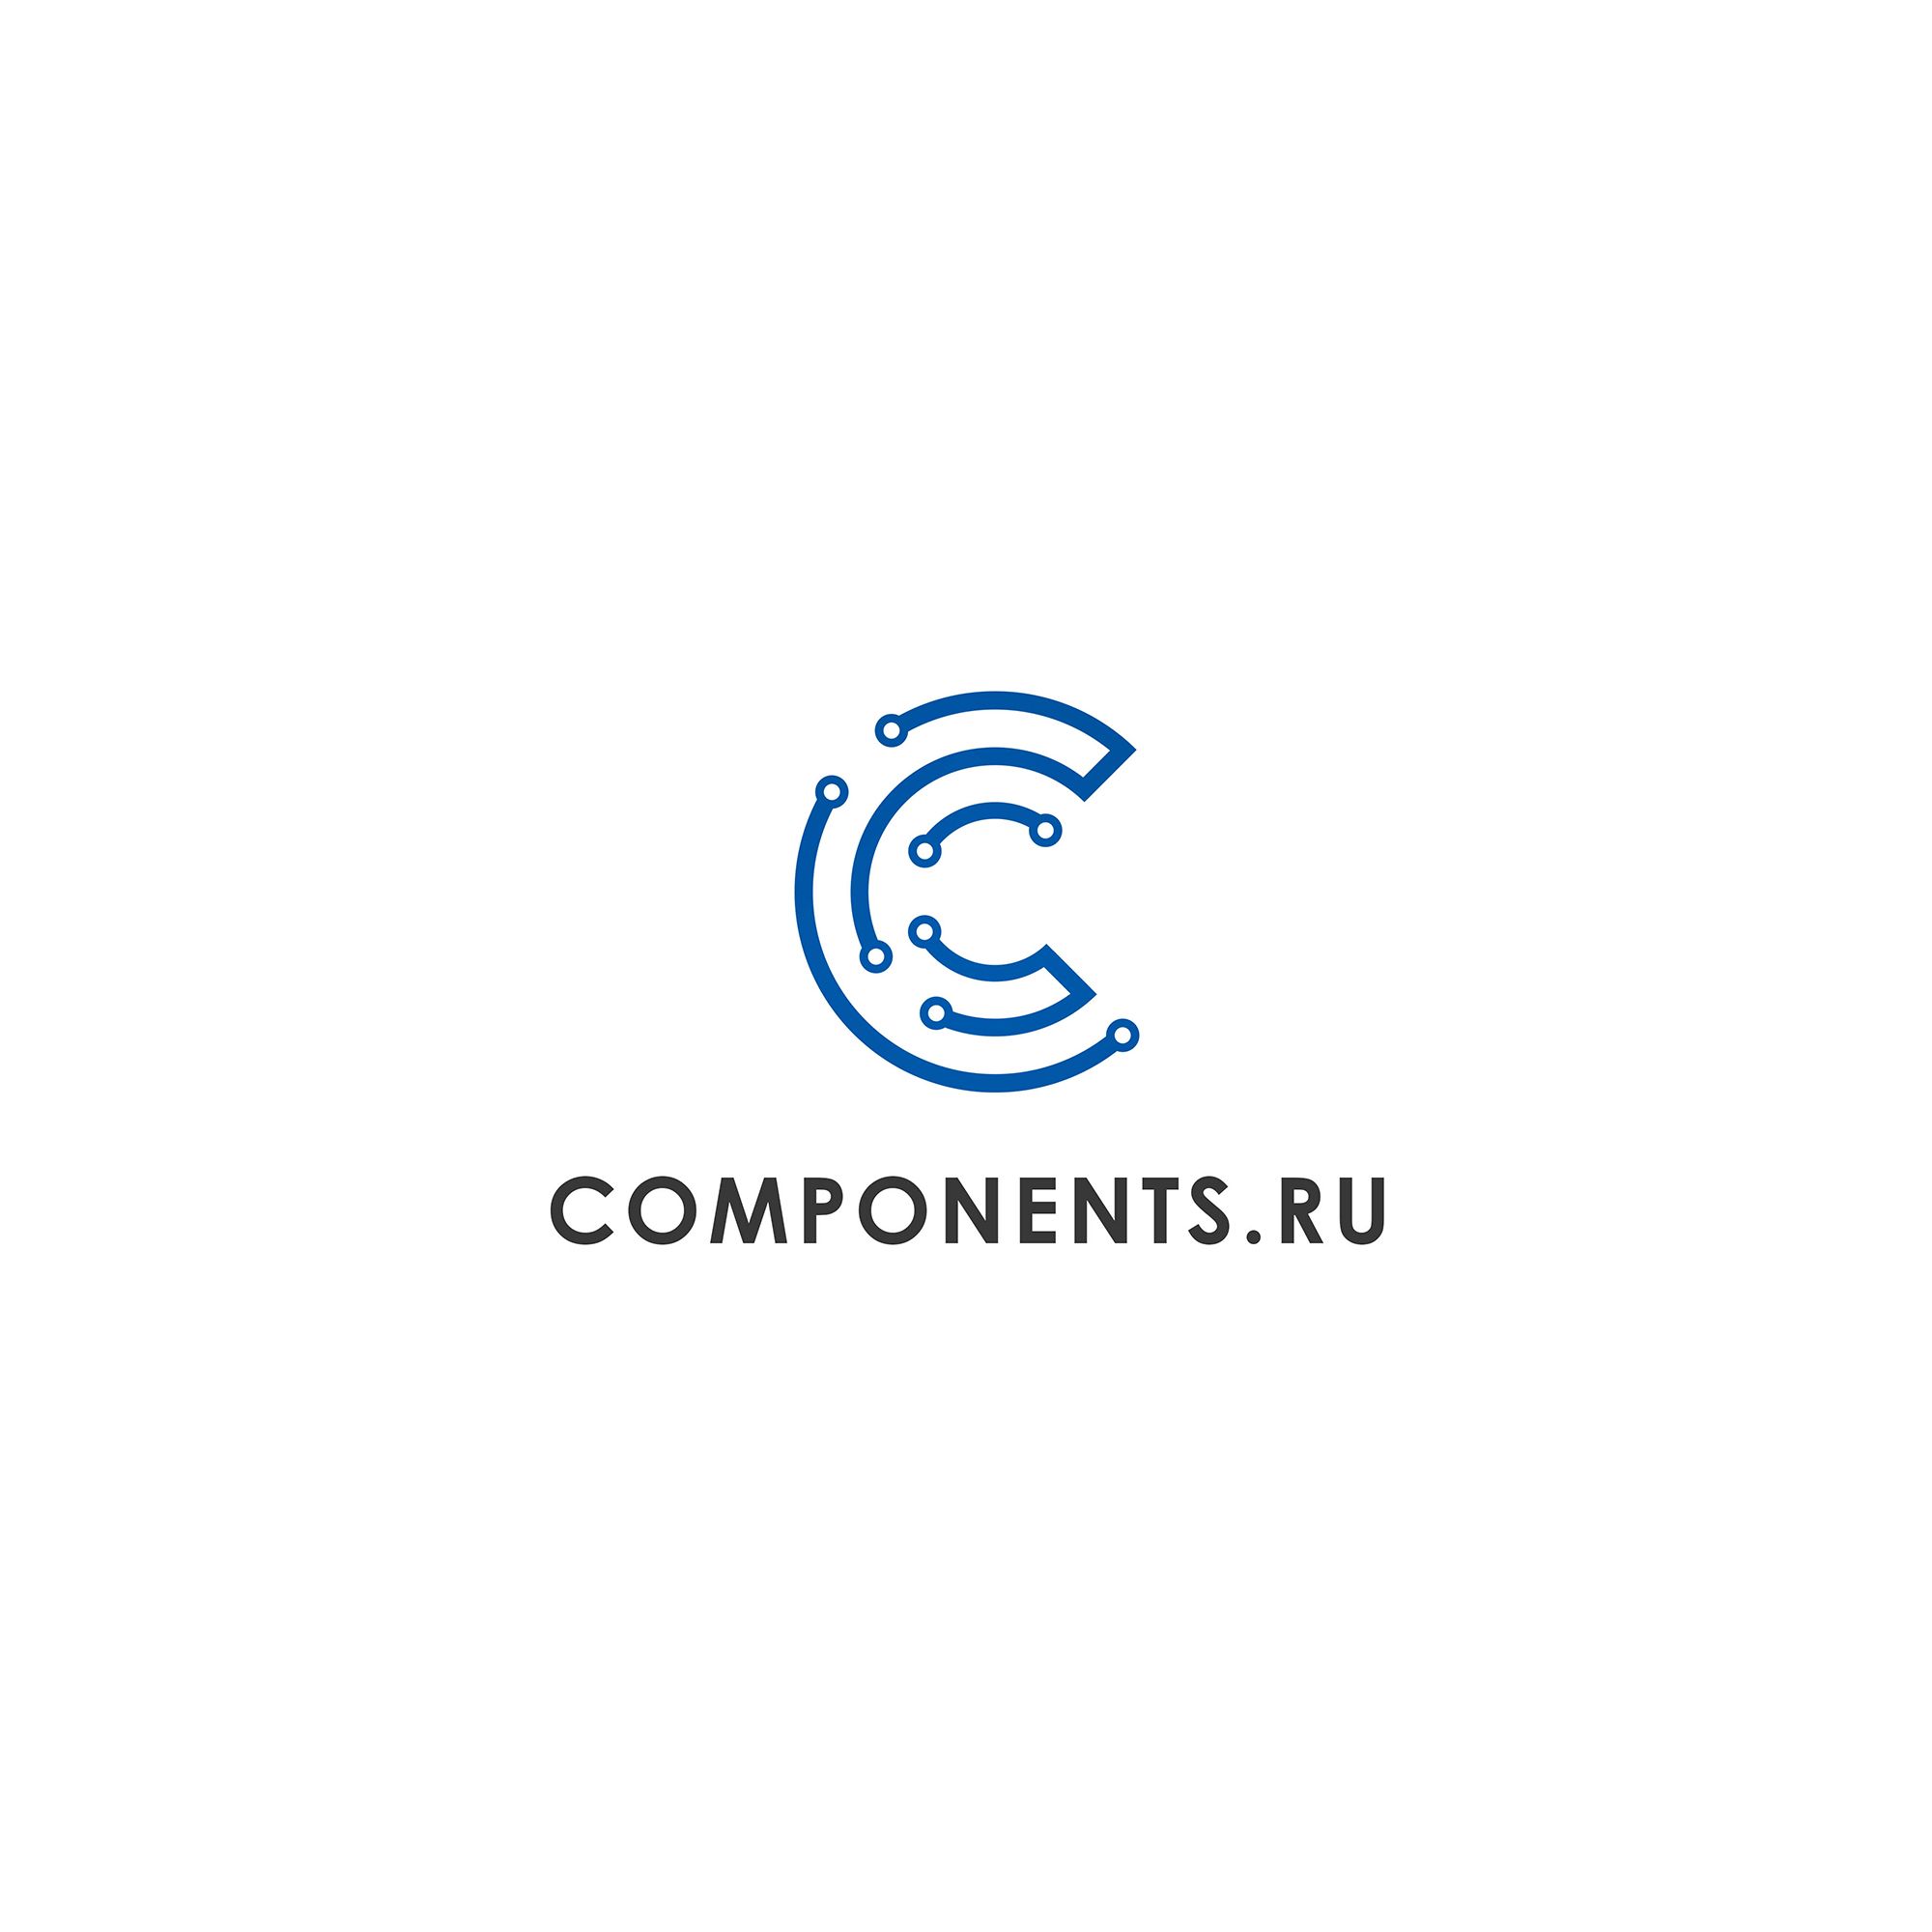 Лого и фирменный стиль для соmpоnеnts.ru - дизайнер seanmik